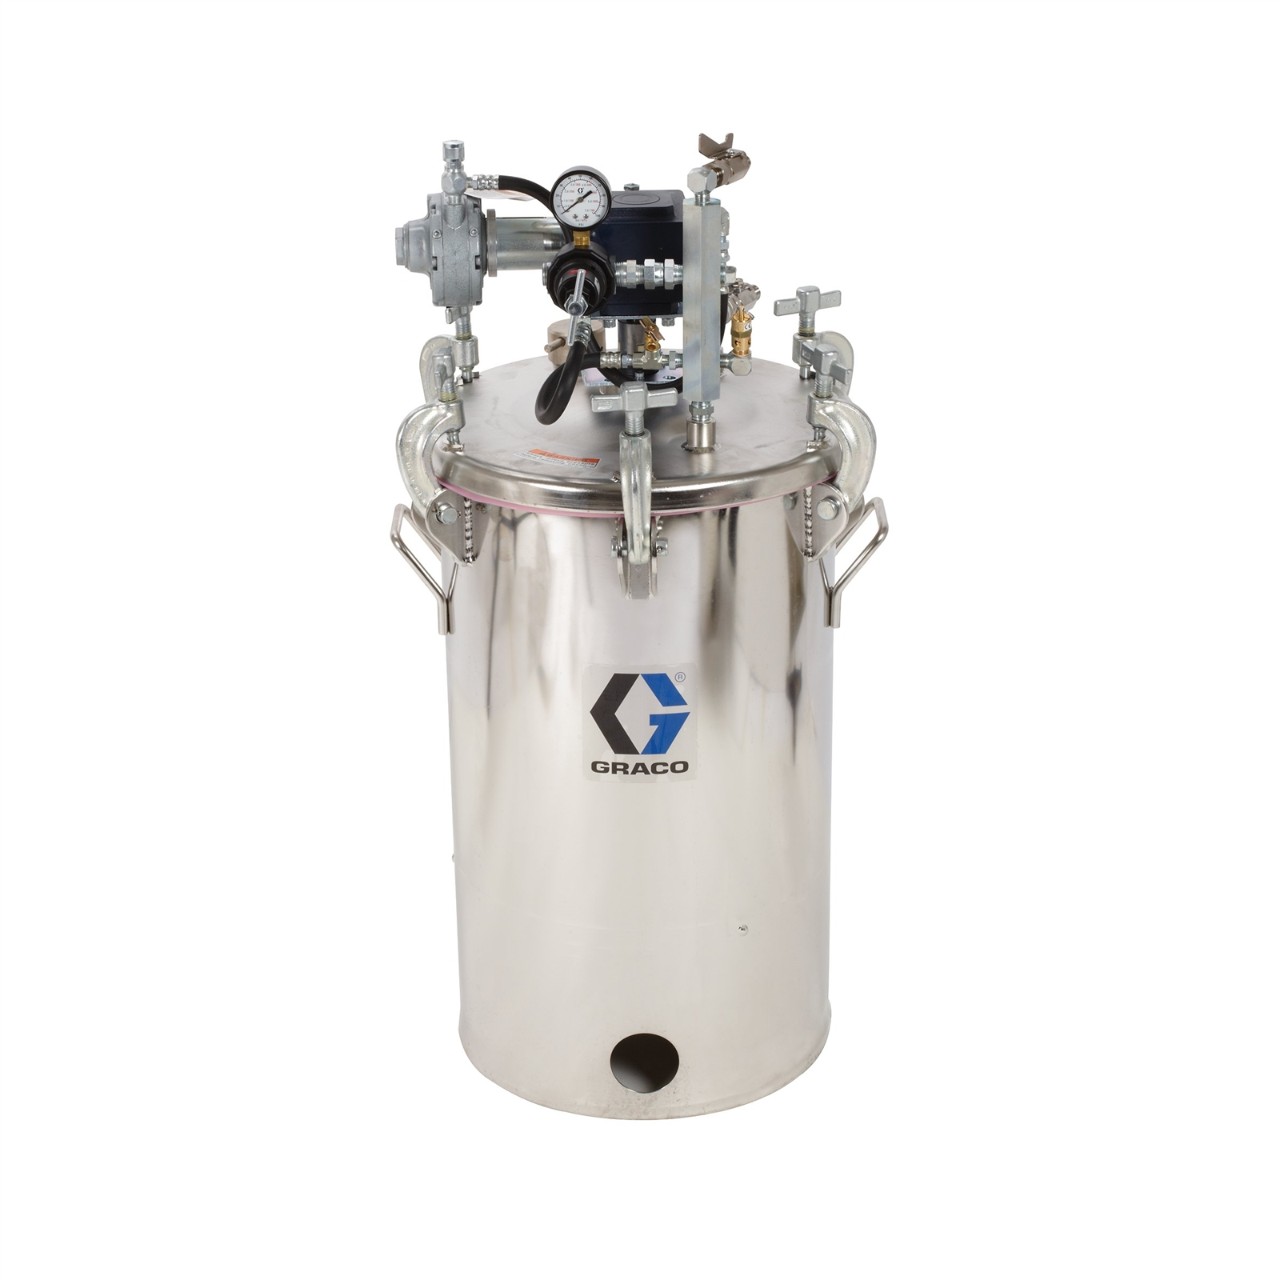 10-gallon pressure pot with agitator